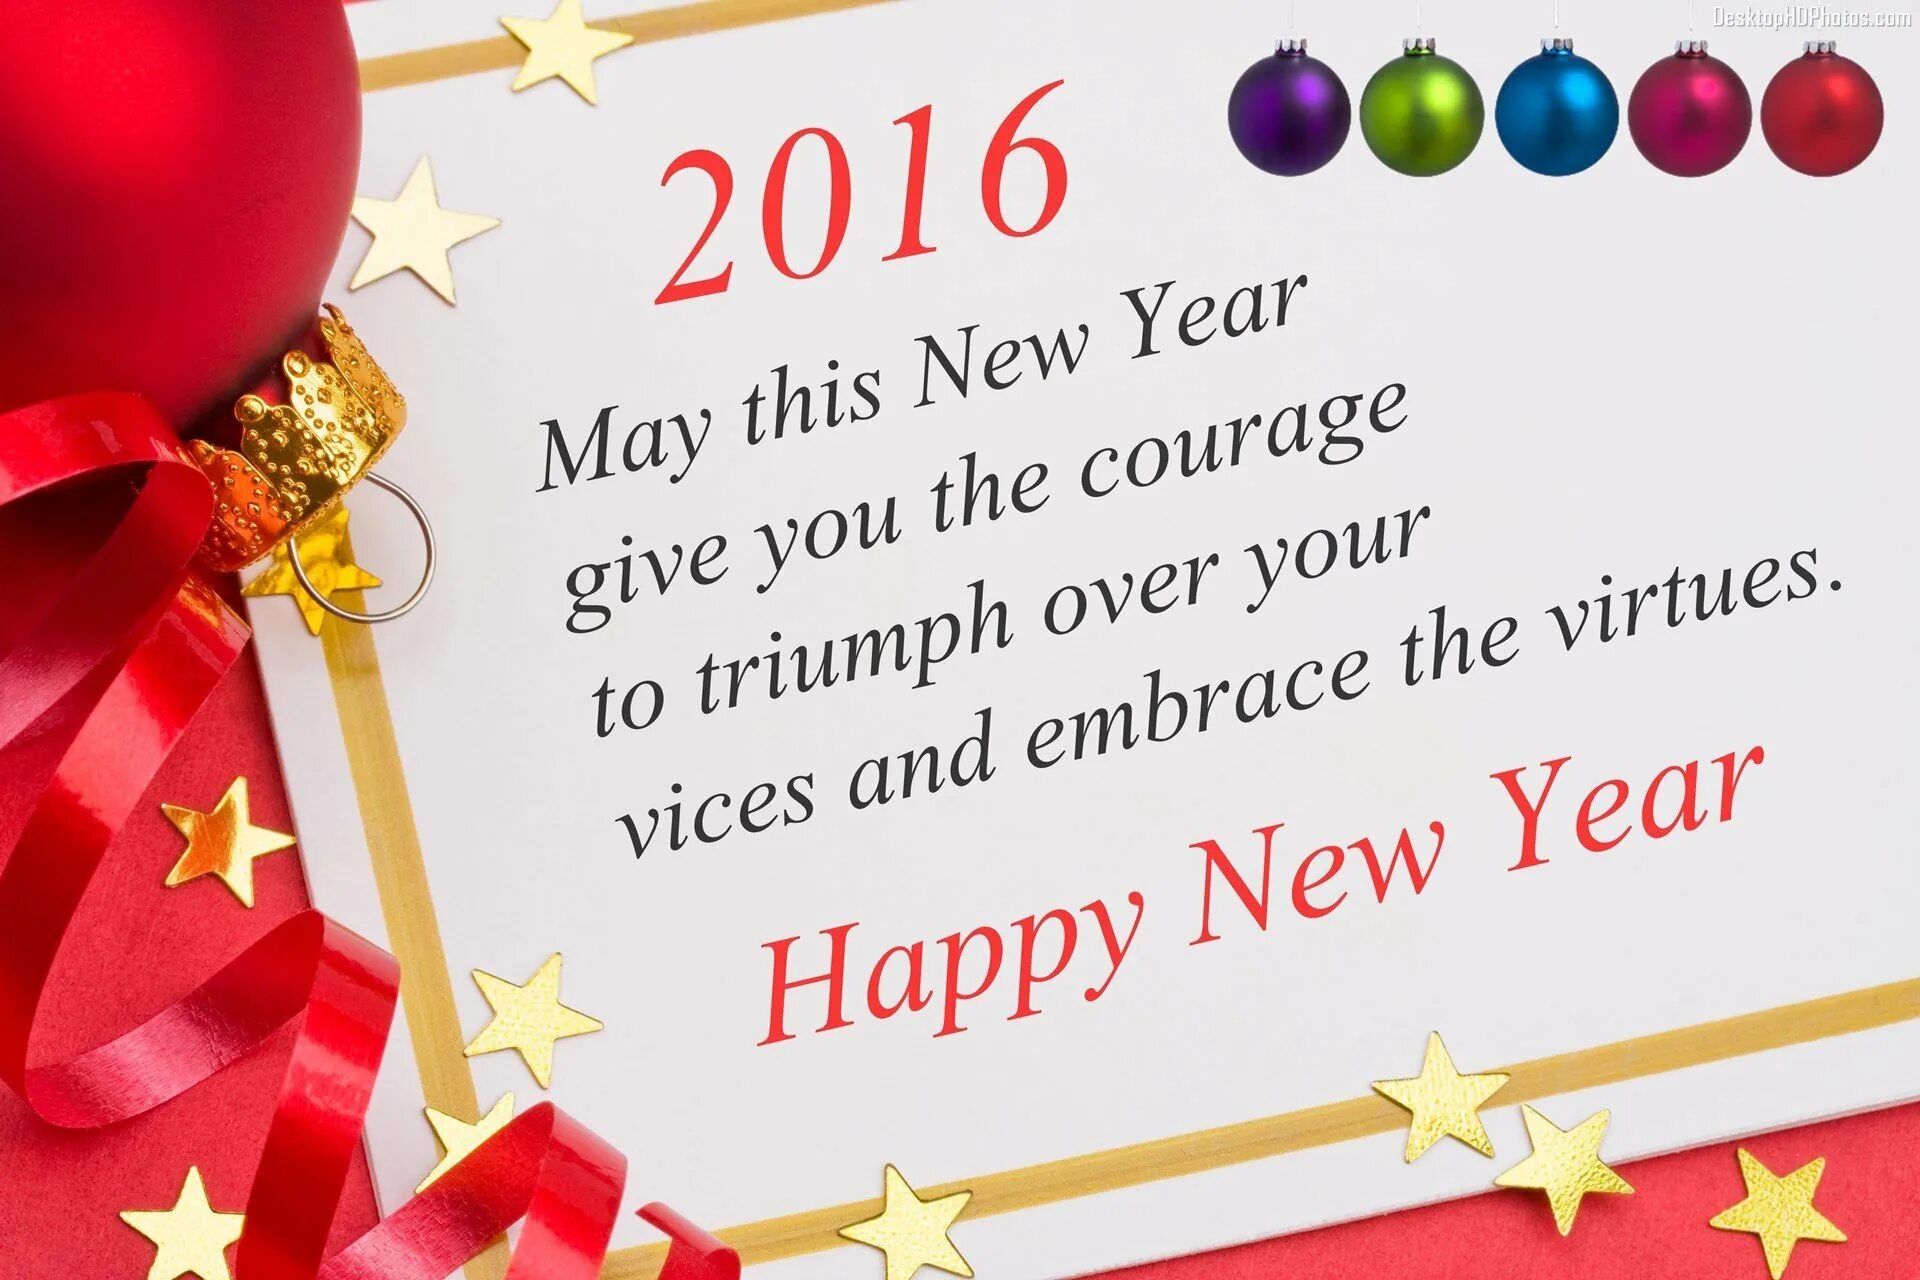 Happy New year поздравление. Поздравление с новым годом на английском языке. Открытки с новым годом на английском языке. Открытка на новый год с поздравлением на английском.